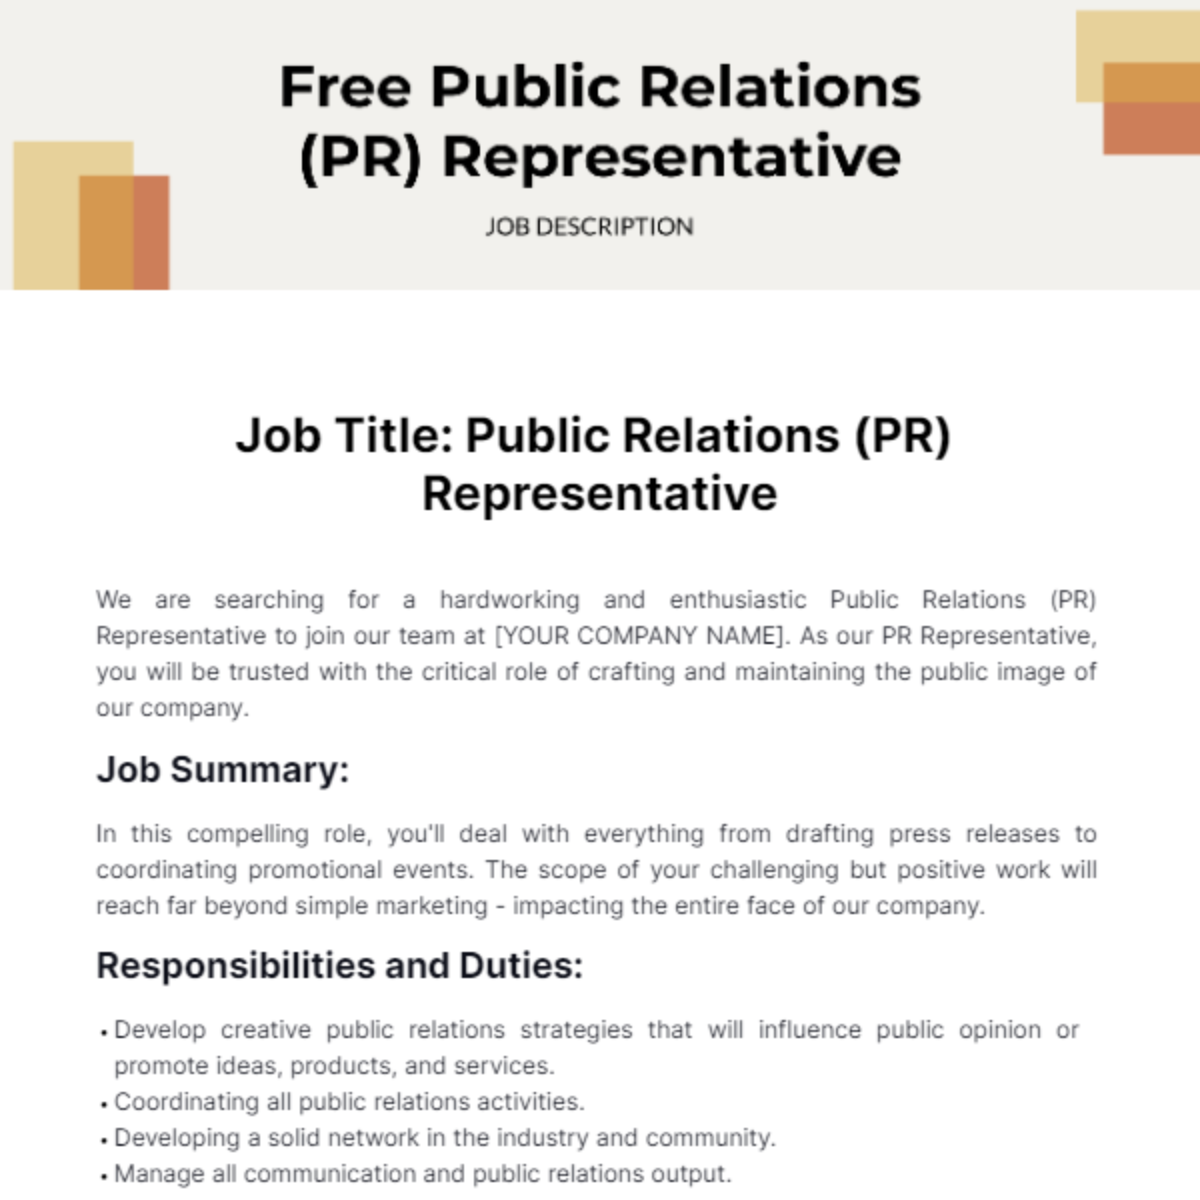 Public Relations (PR) Representative Job Description Template